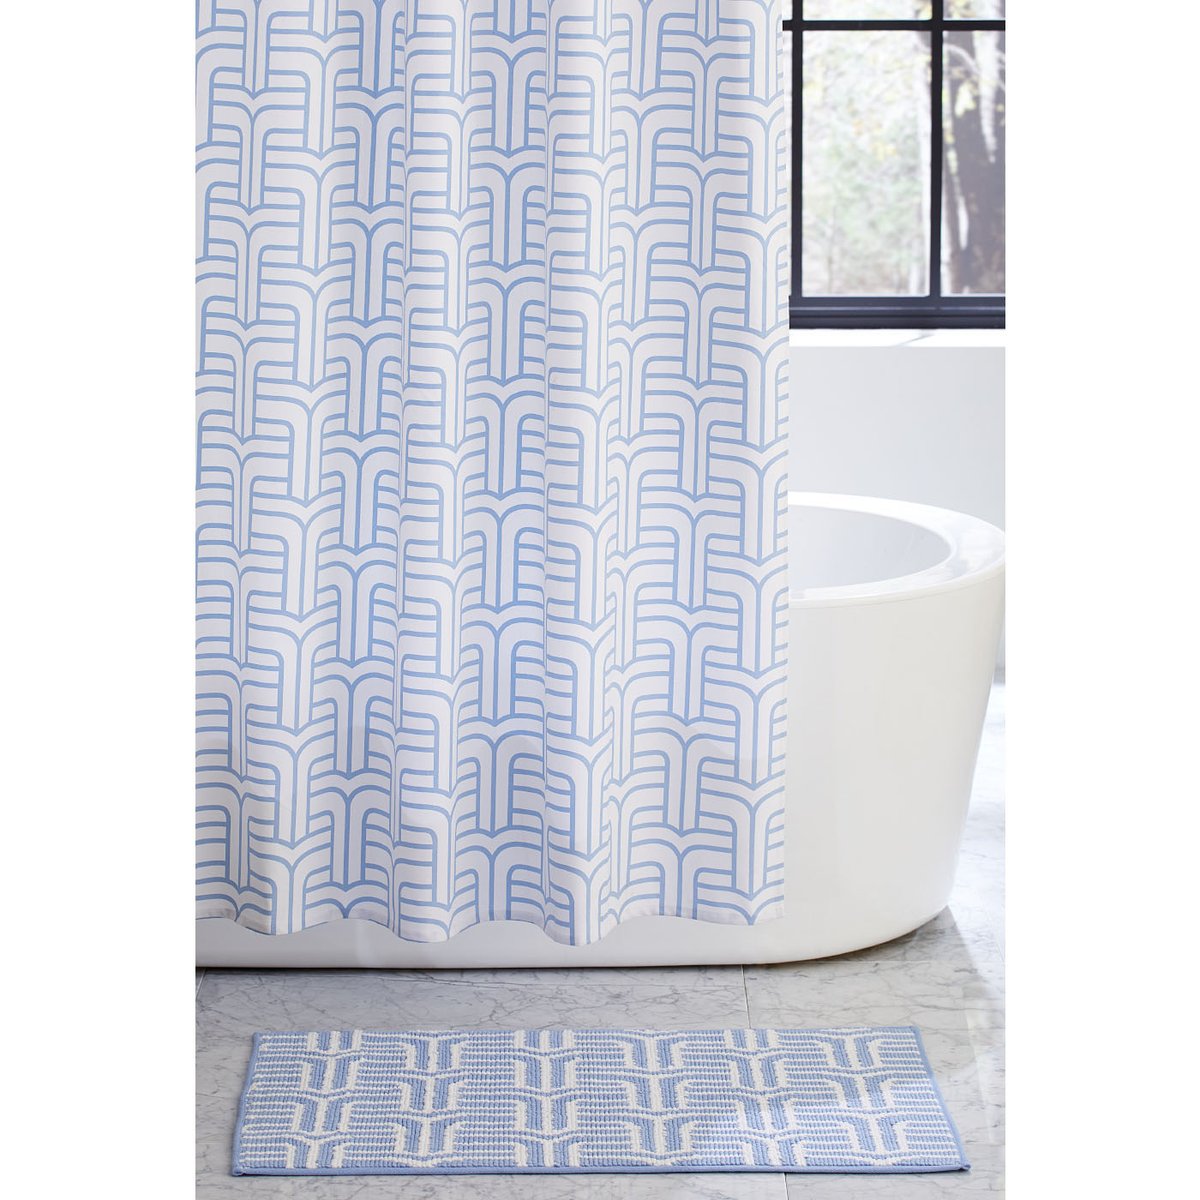 A Matching Shower Curtain and Bath Mat